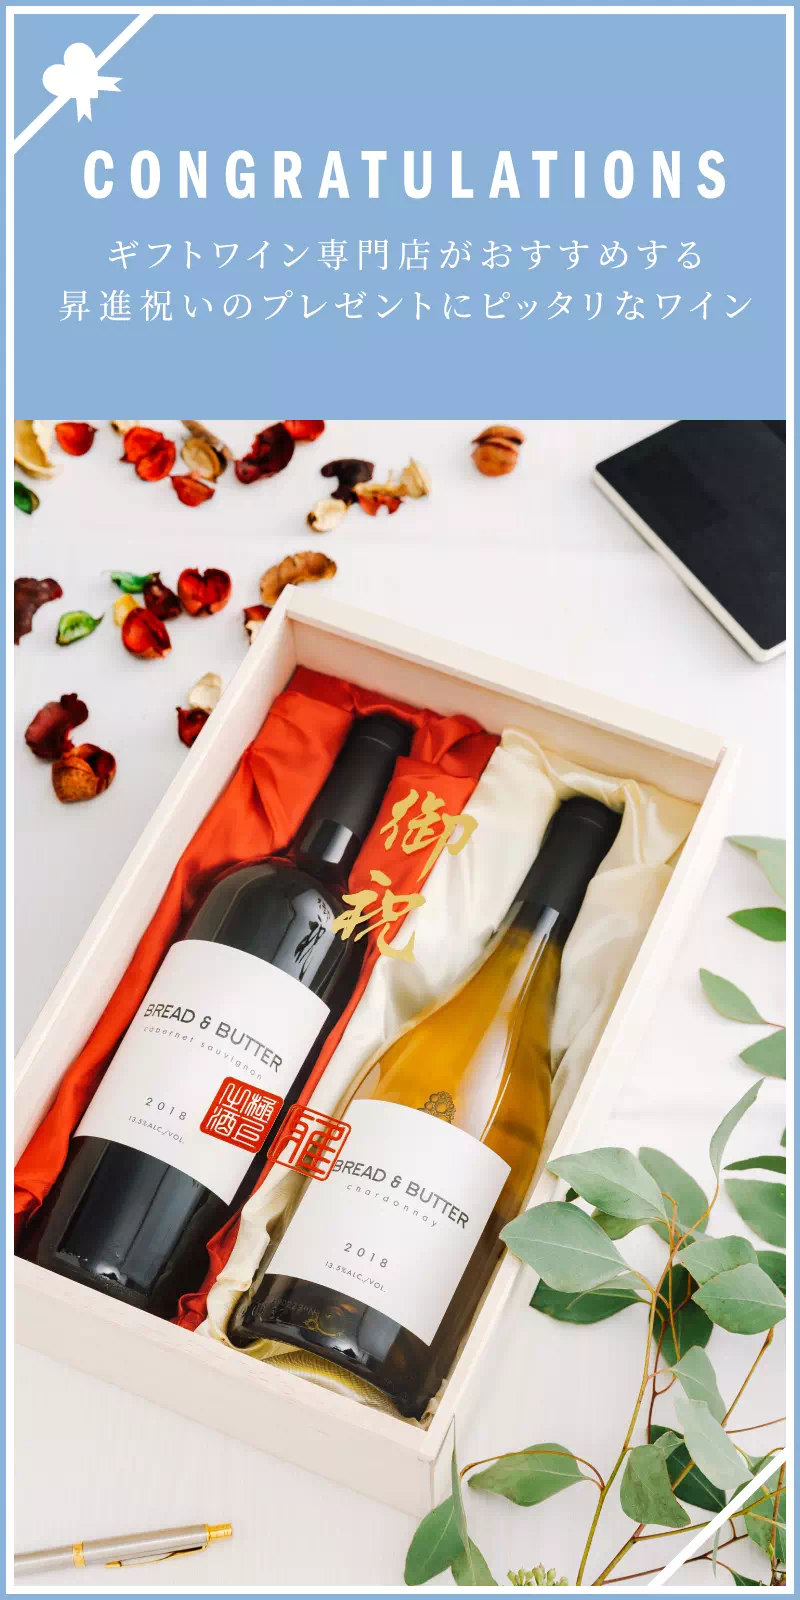 昇進・昇格祝い・栄転祝いのワイン人気ランキング 2022【ワイン専門店LoveWine（ラブワイン）】